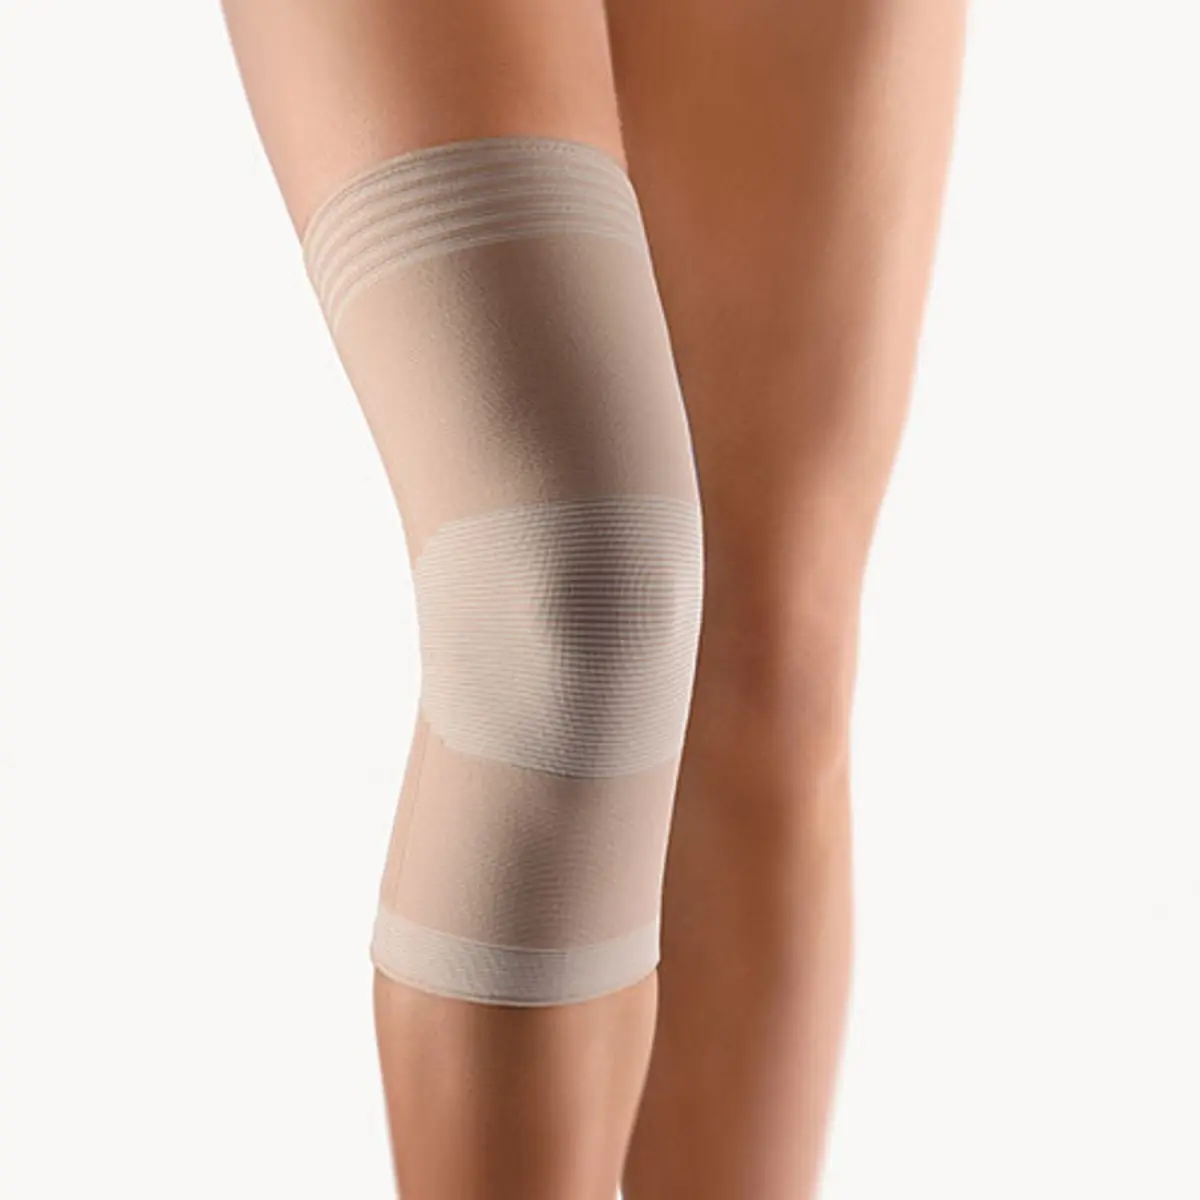 Суппорт колена Bort Medical Dual-Tension Knee Support, двойной растяжки, телесный